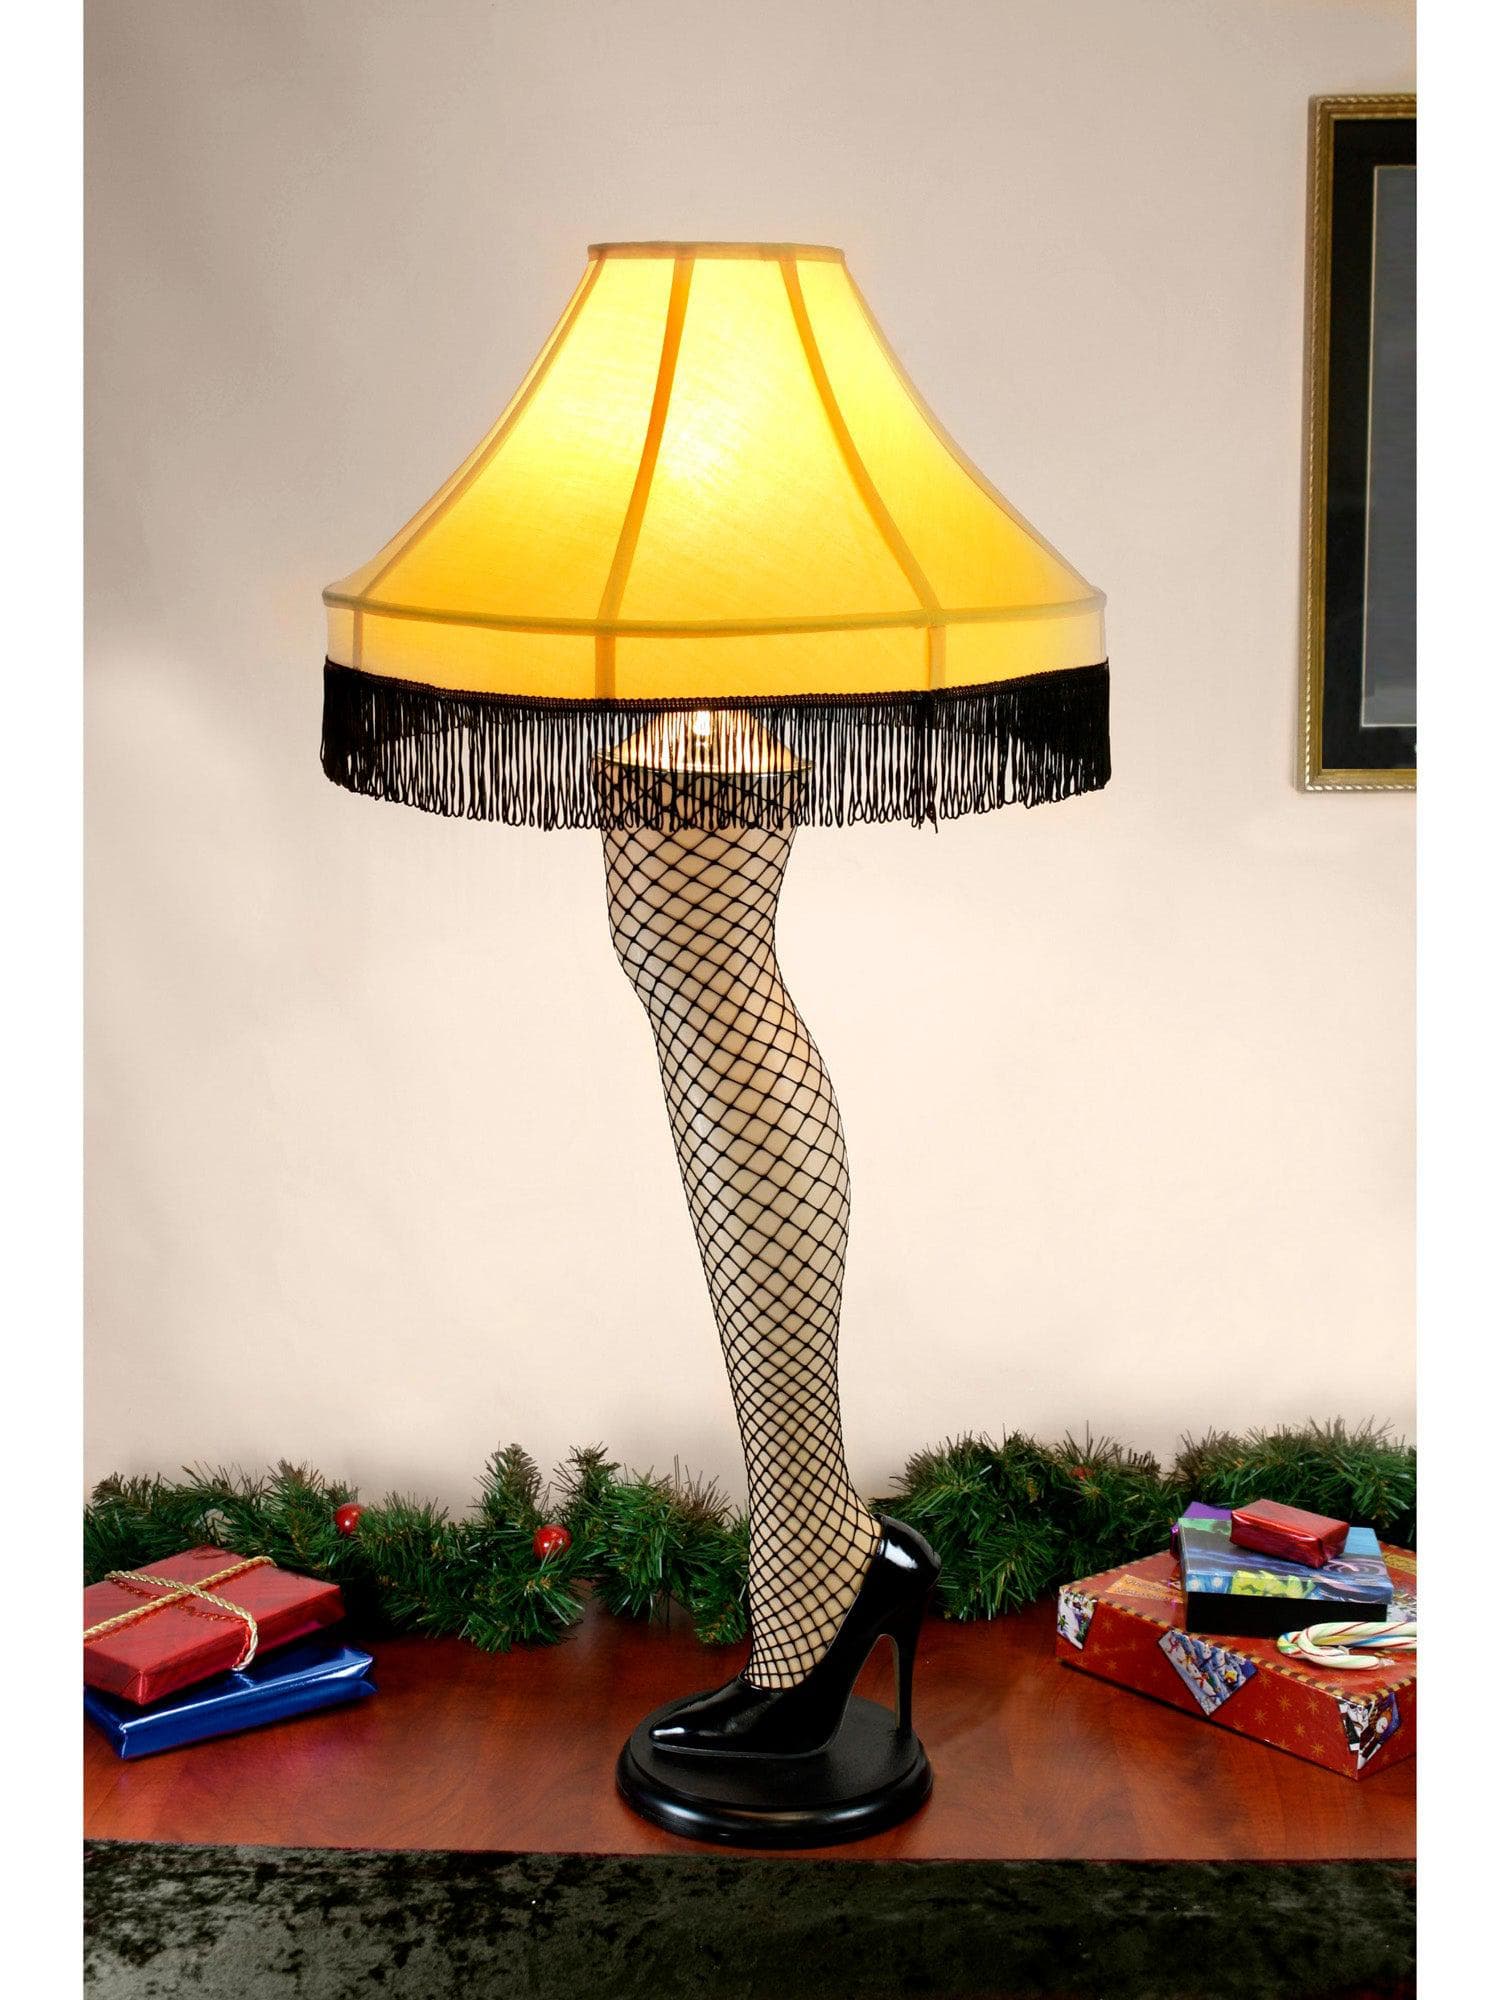 NECA - A Christmas Story - Prop Replica - 40" Leg Lamp - costumes.com